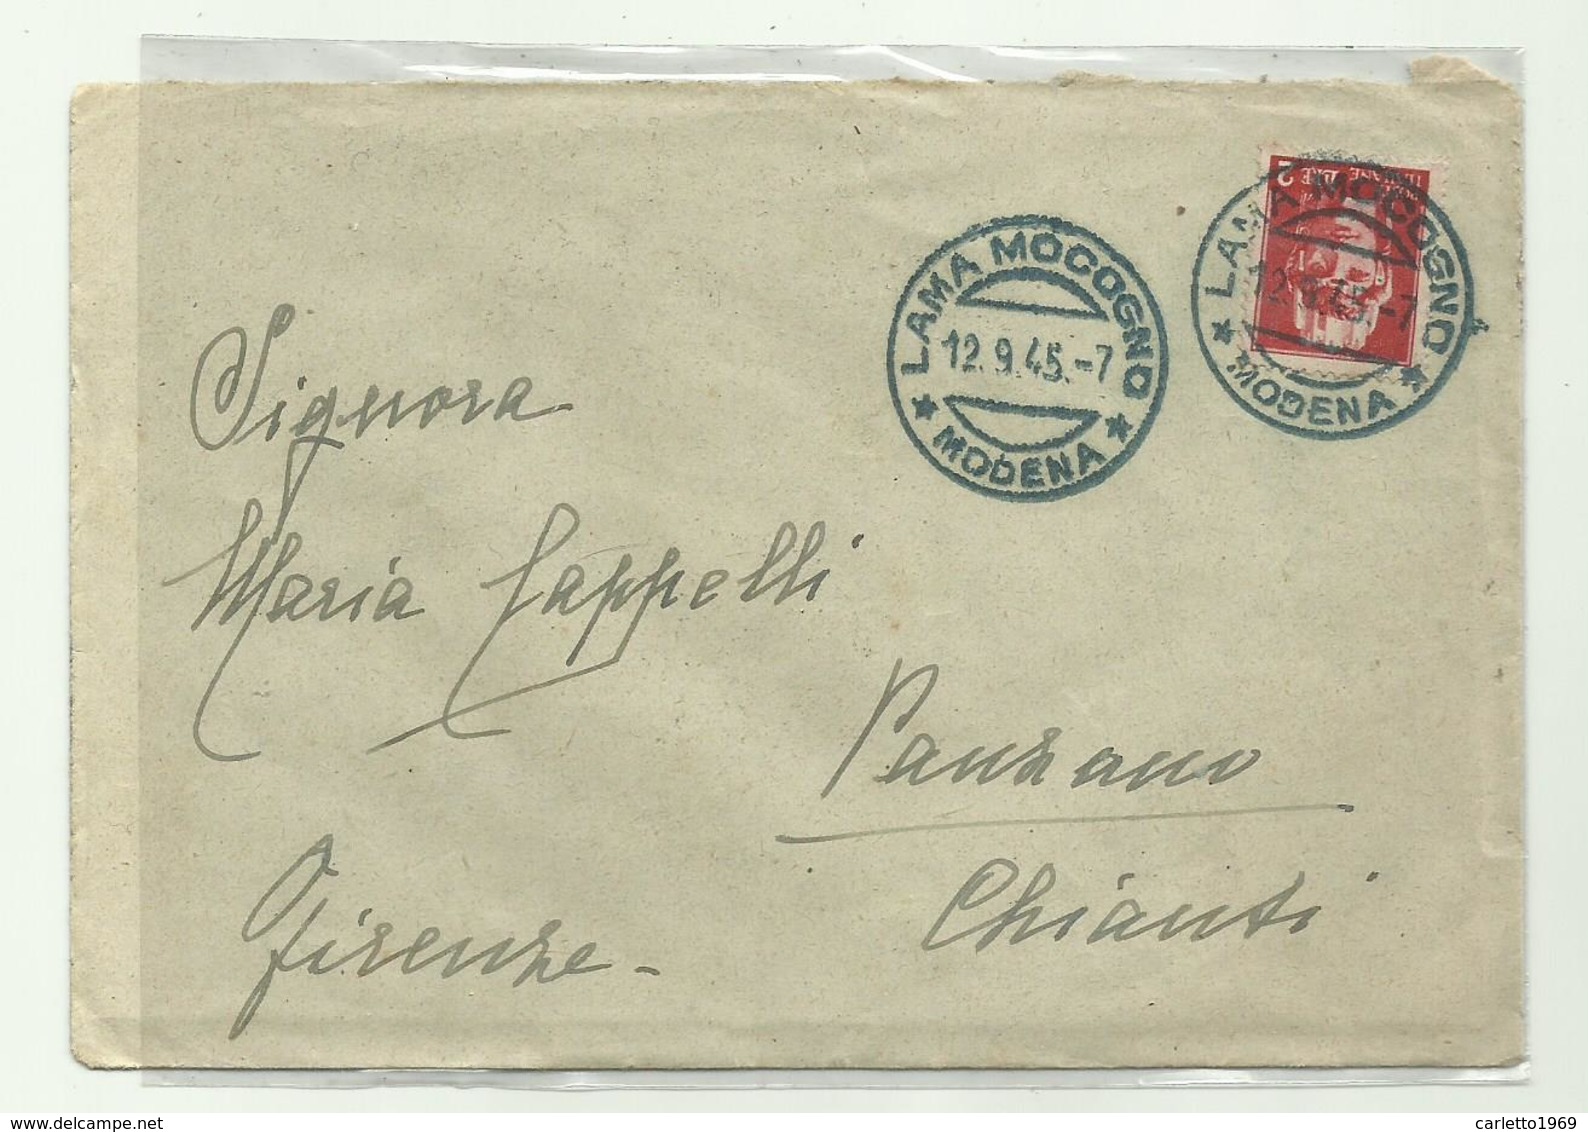 FRANCOBOLLO LIRE 2 IMPERIALE SU BUSTA 1945 - Poststempel